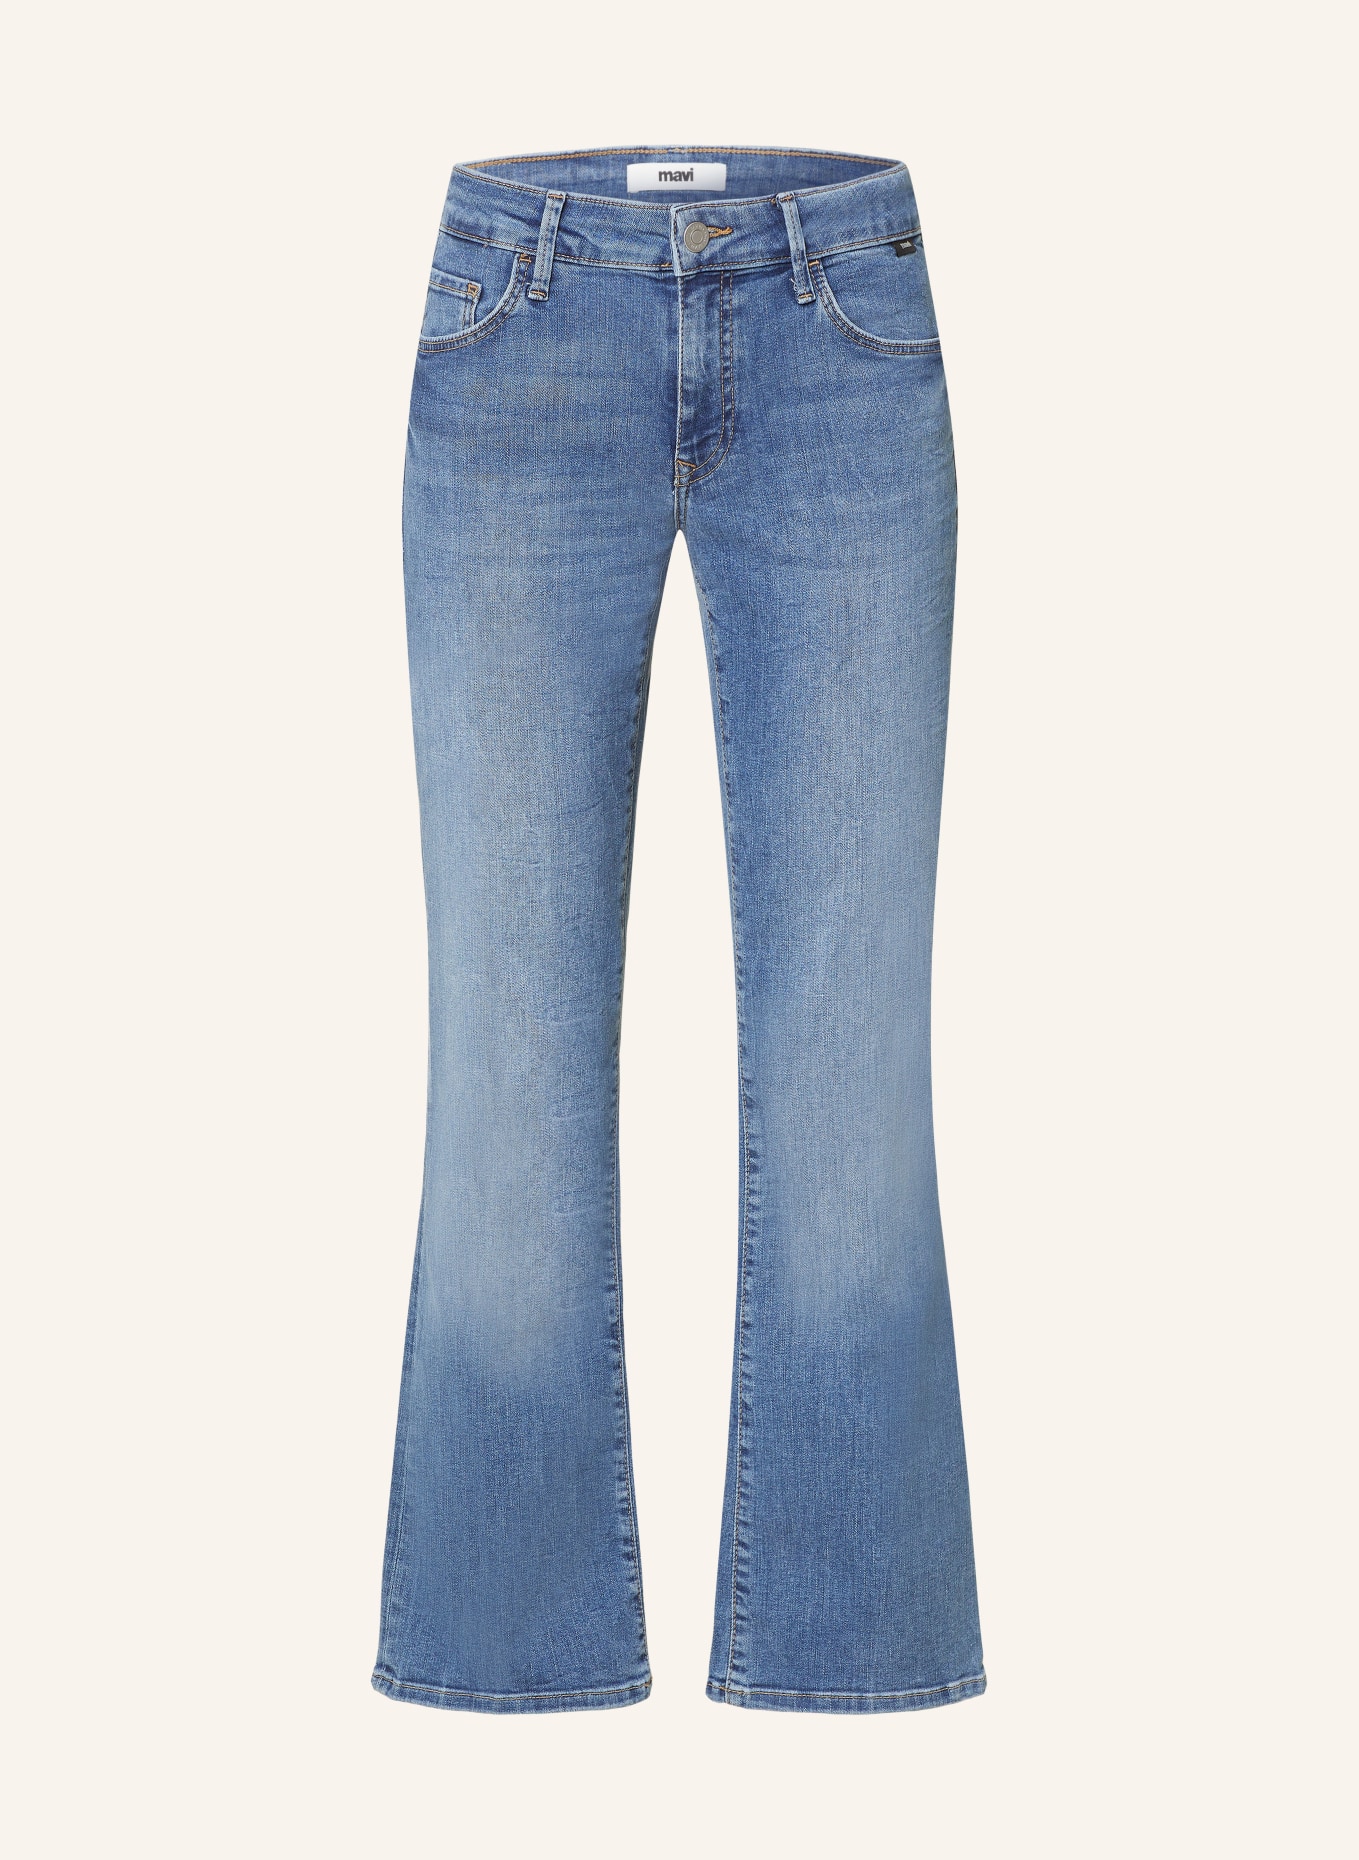 mavi Jeans BELLA, Color: 86845 dark brushed str (Image 1)